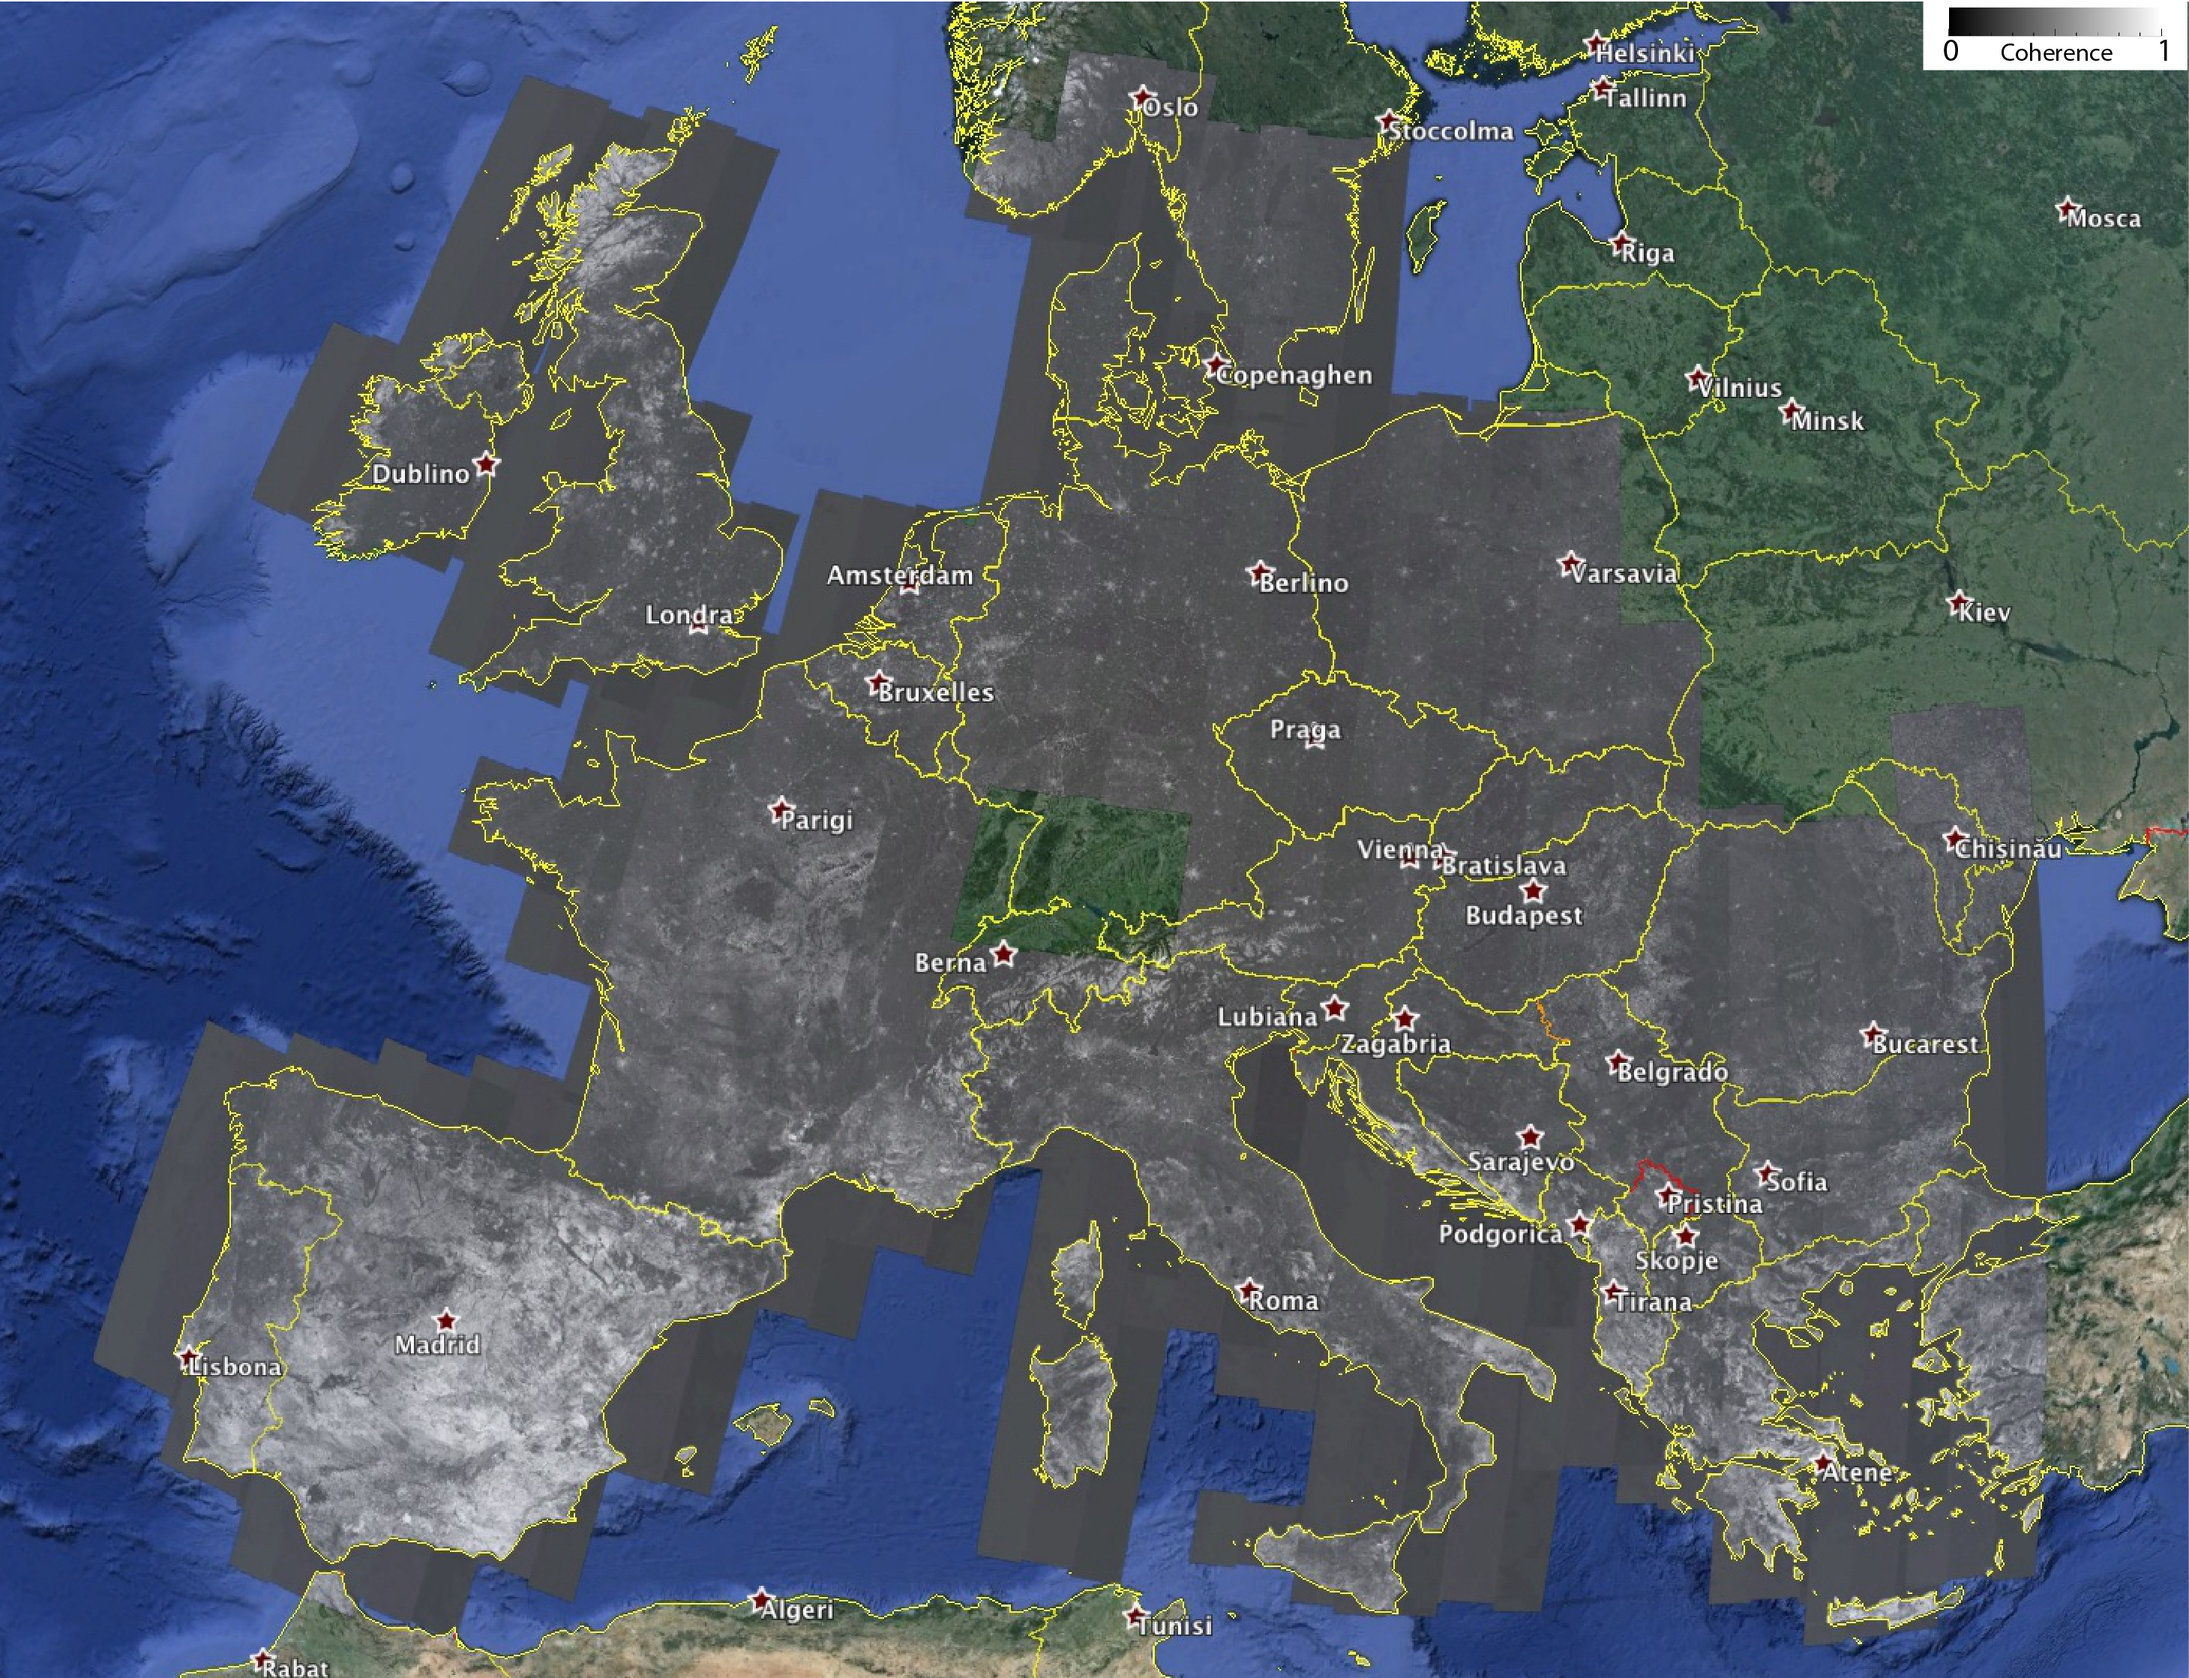 interferometric map of europe